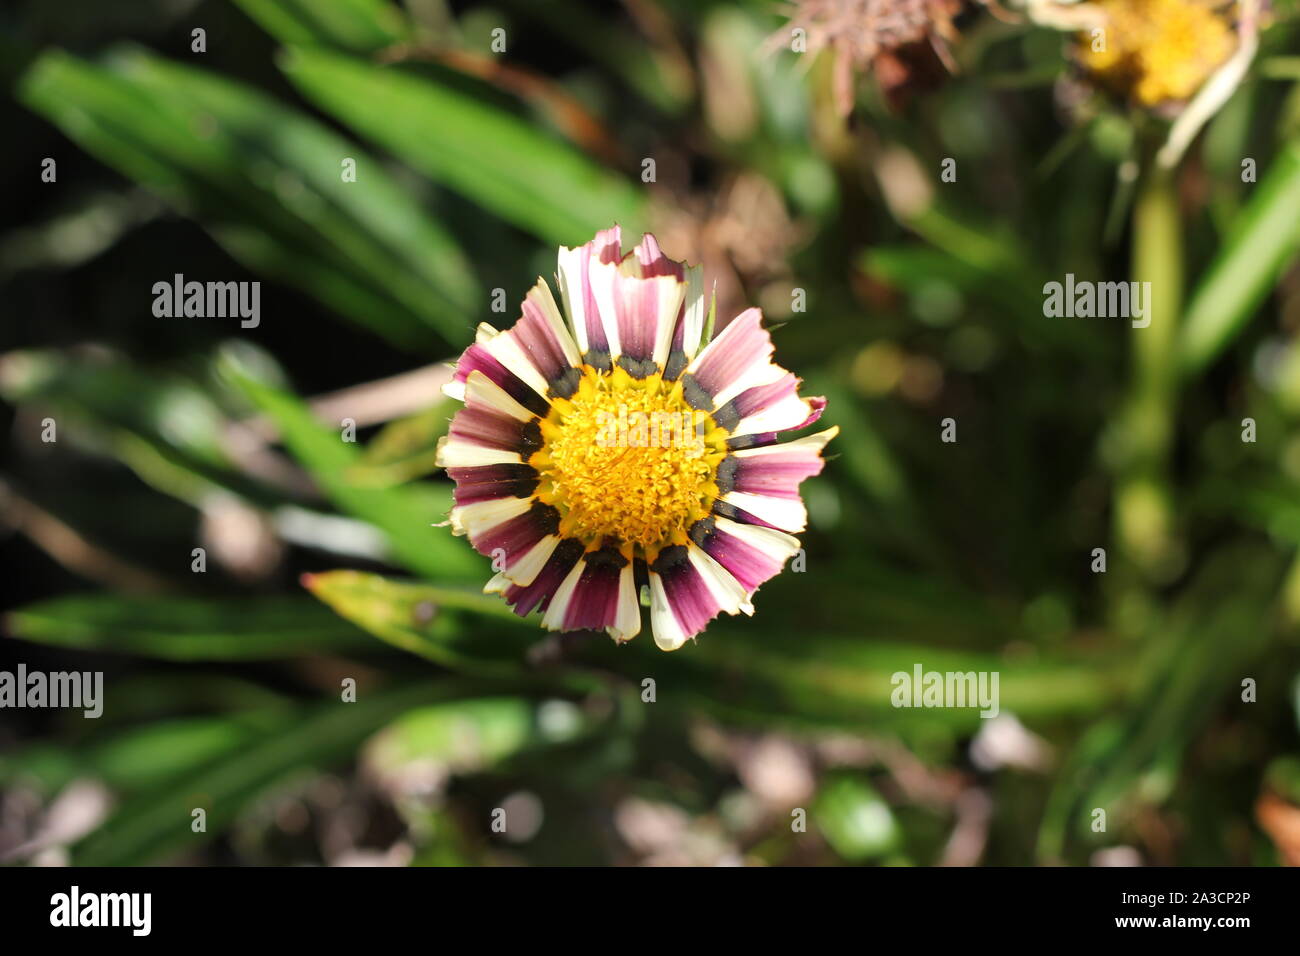 Fiore di mezzogiorno con grande occhio giallo e rosa-bianco striato petali. I petali in esecuzione come piume. Flower look elegante ed esotico. Foto Stock